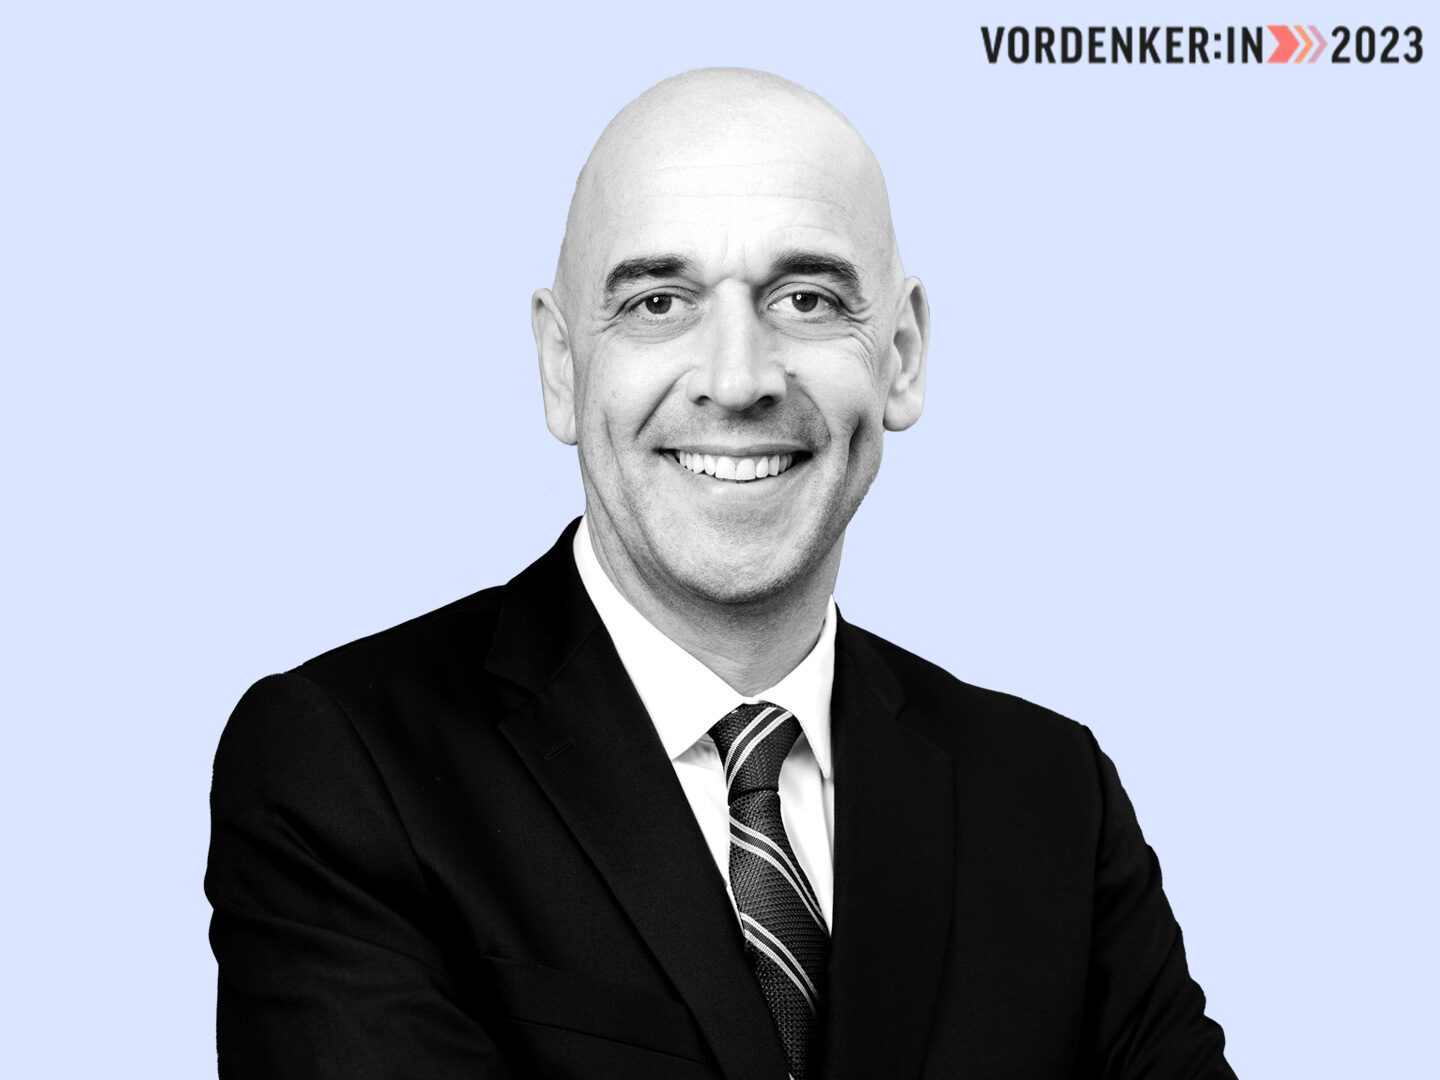 Stefan Wimmer Portrait Vordenker 2023